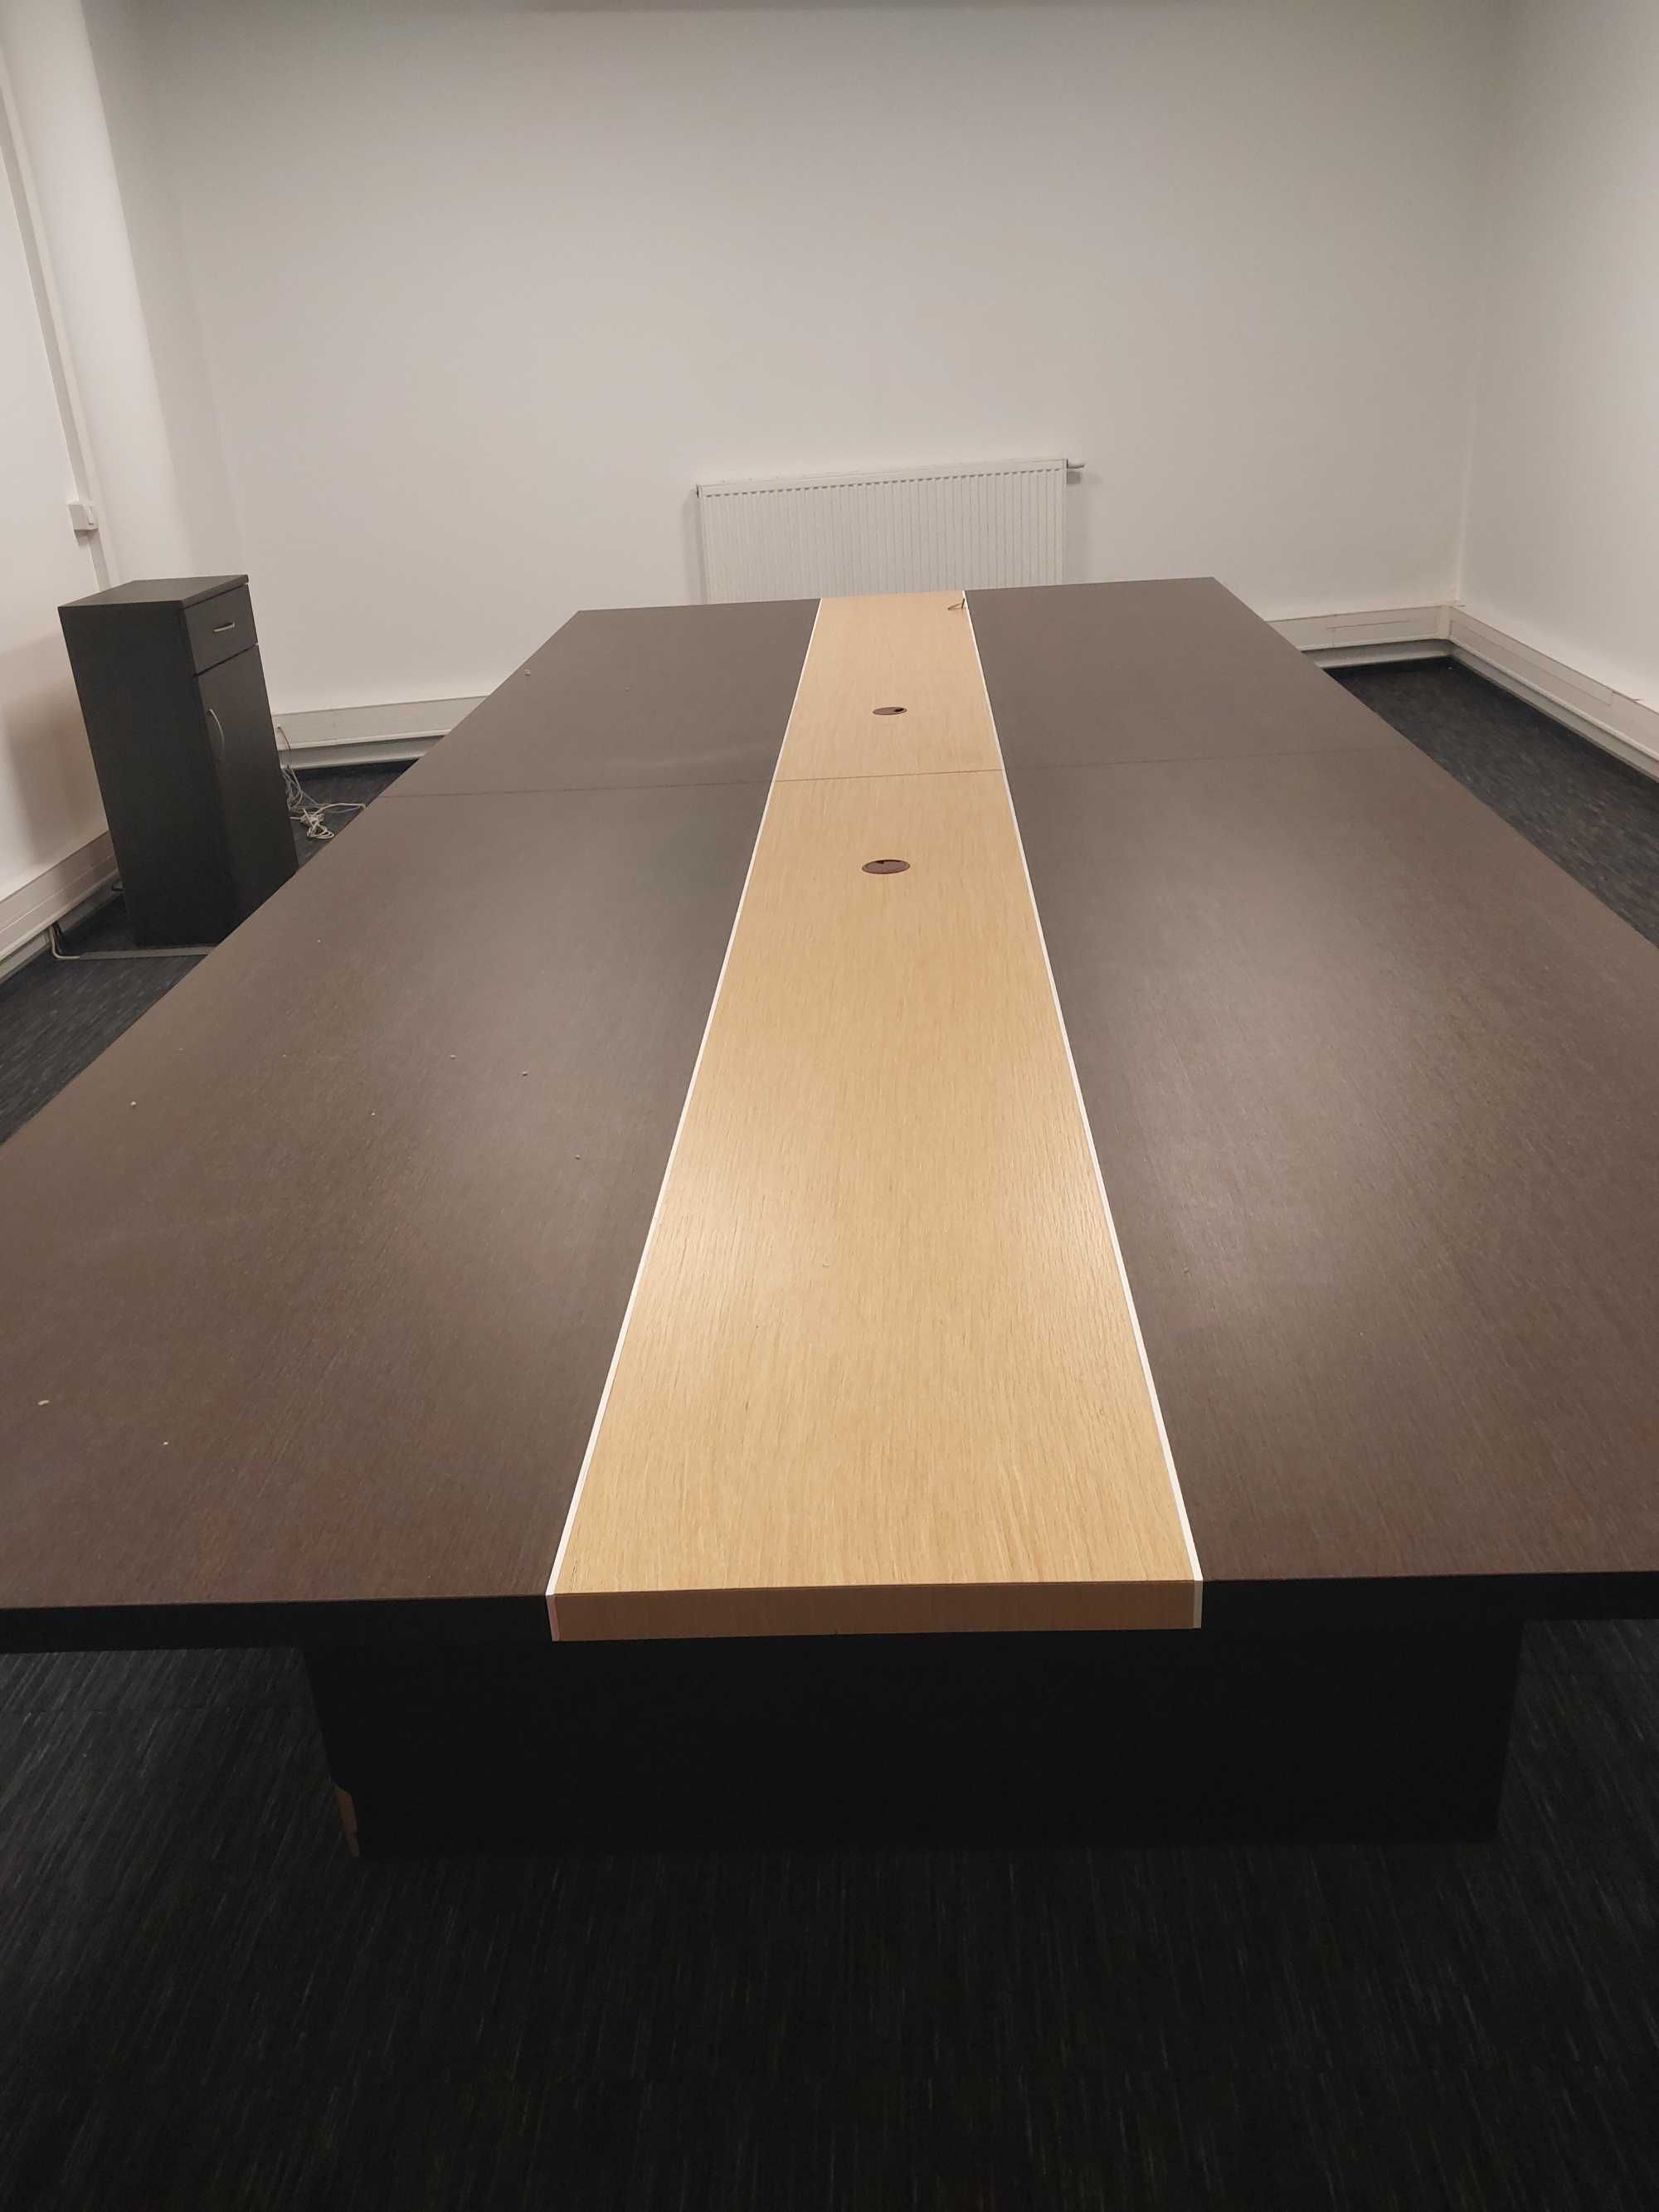 Stół konferencyjny używany w bardzo dobrym stanie .